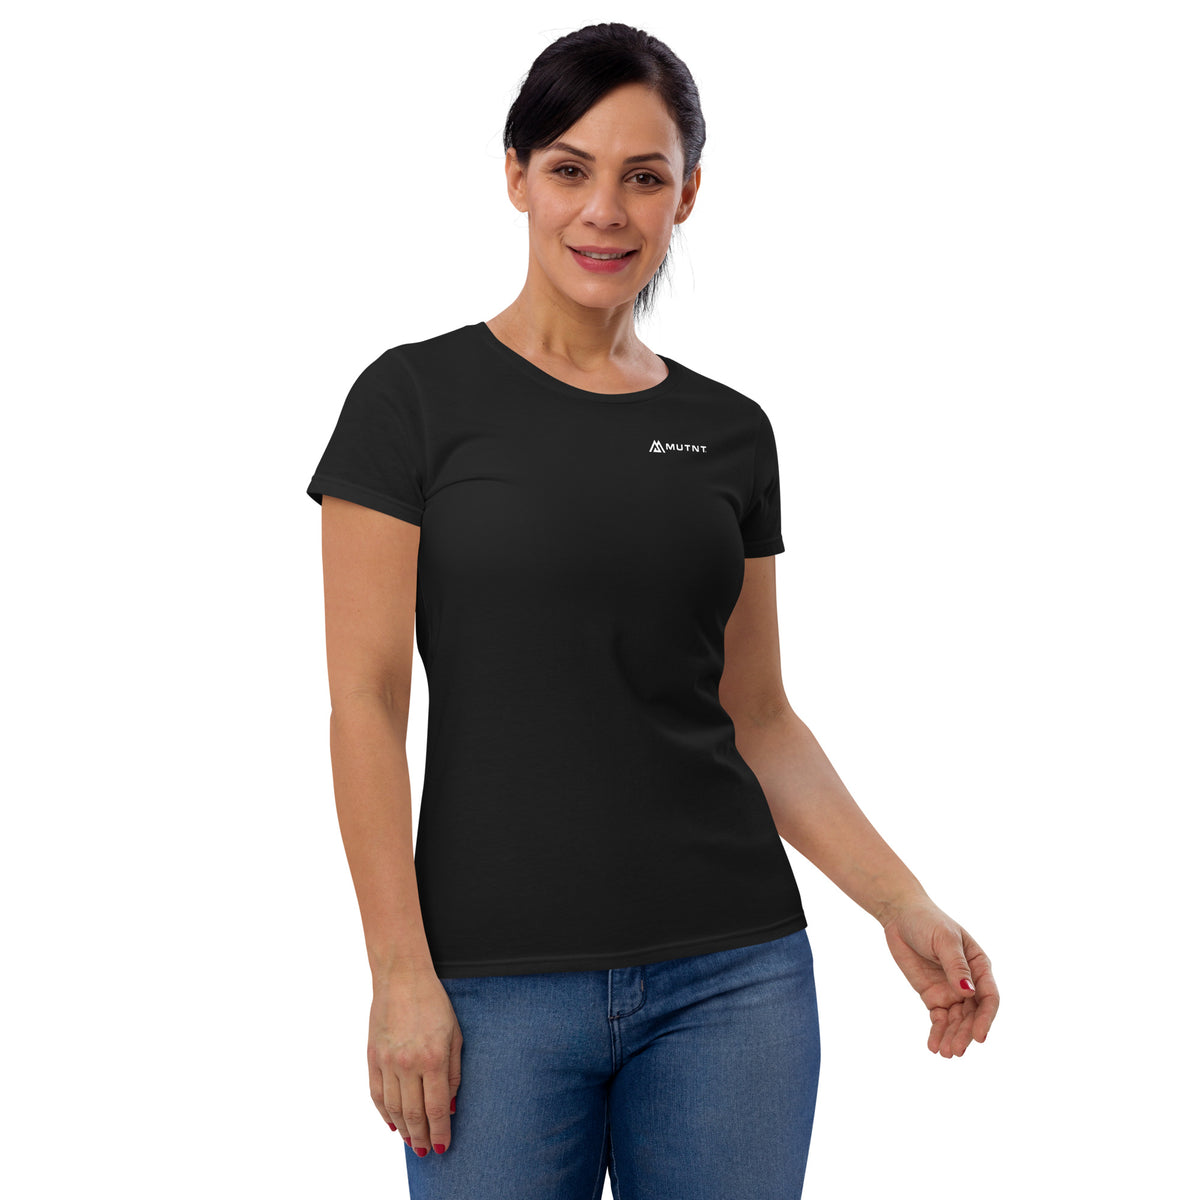 Women&#39;s MUTNT Logo Short Sleeve T-shirt